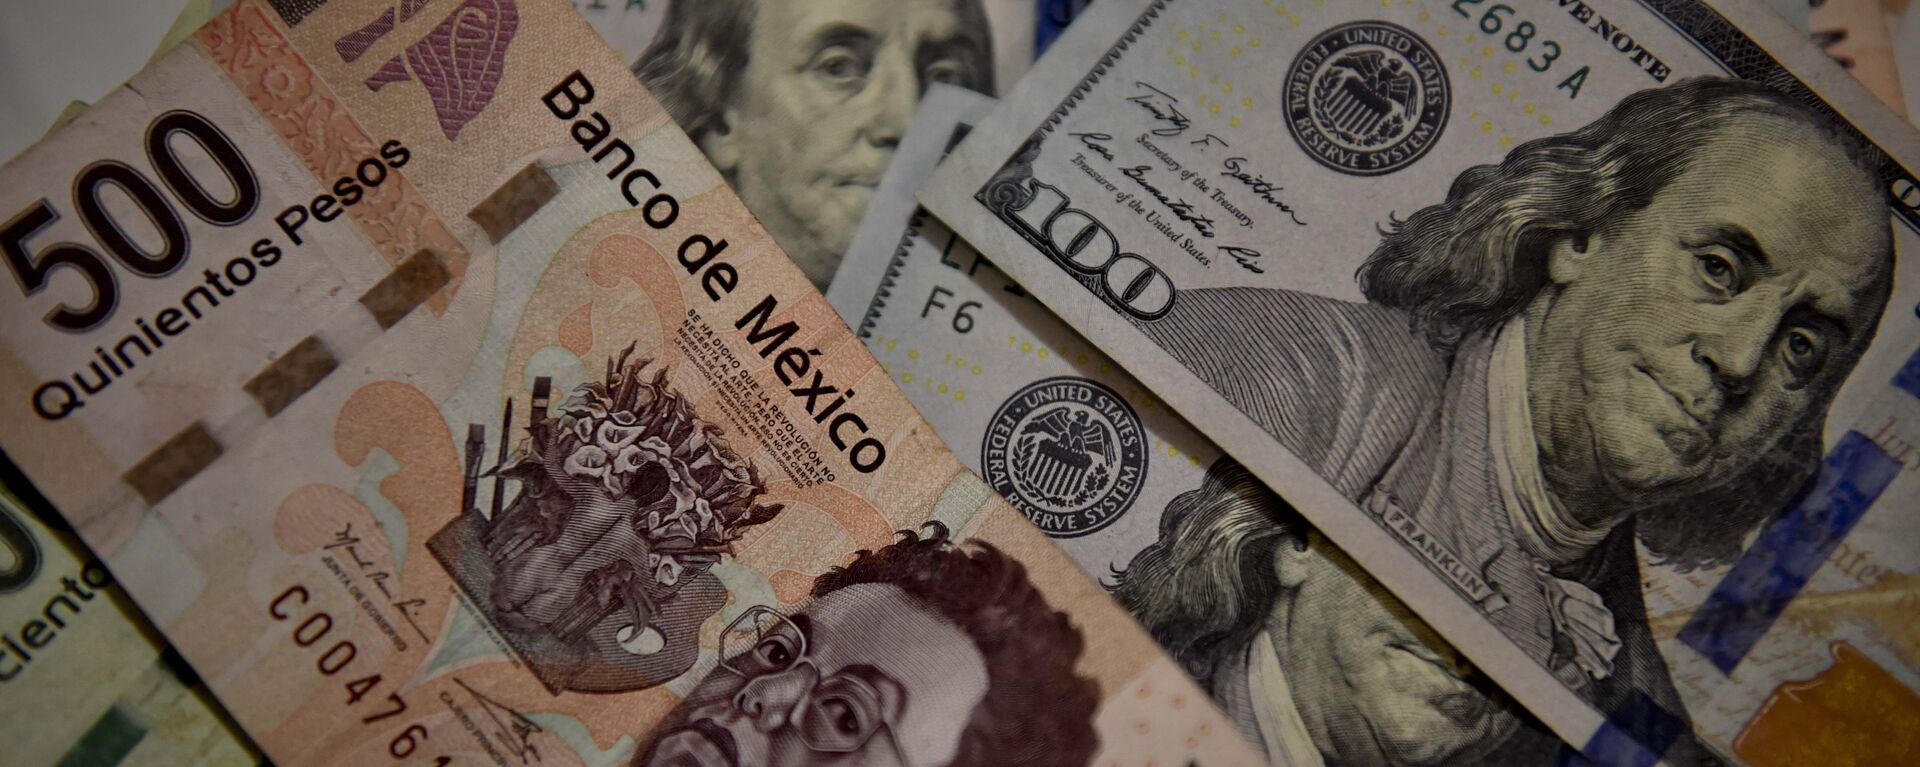 Peso mexicano y dólar estadounidense - Sputnik Mundo, 1920, 04.08.2020